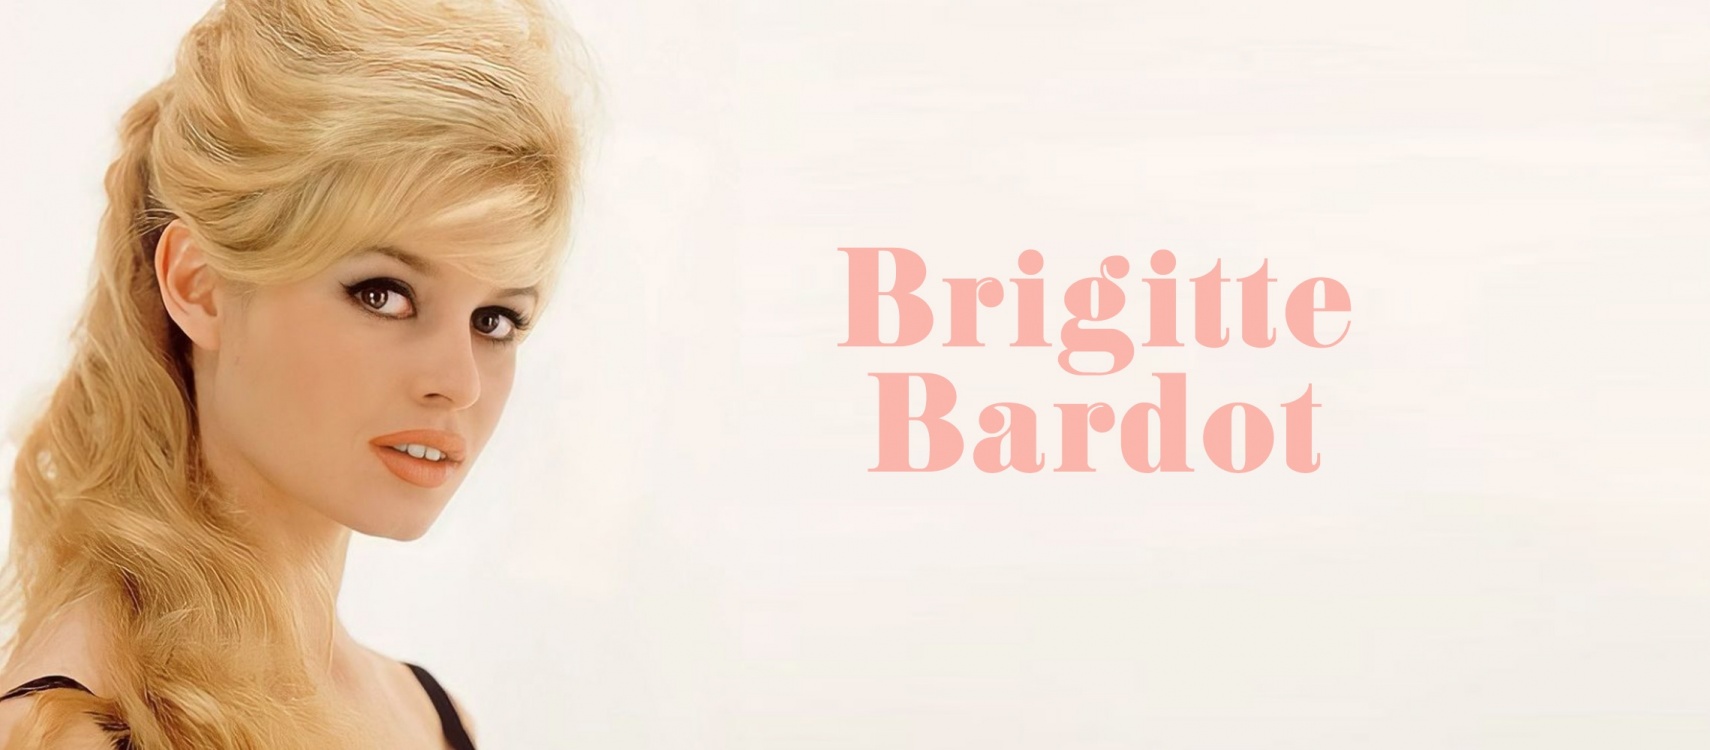 Brigitte Bardot: a true style icon | Read more here